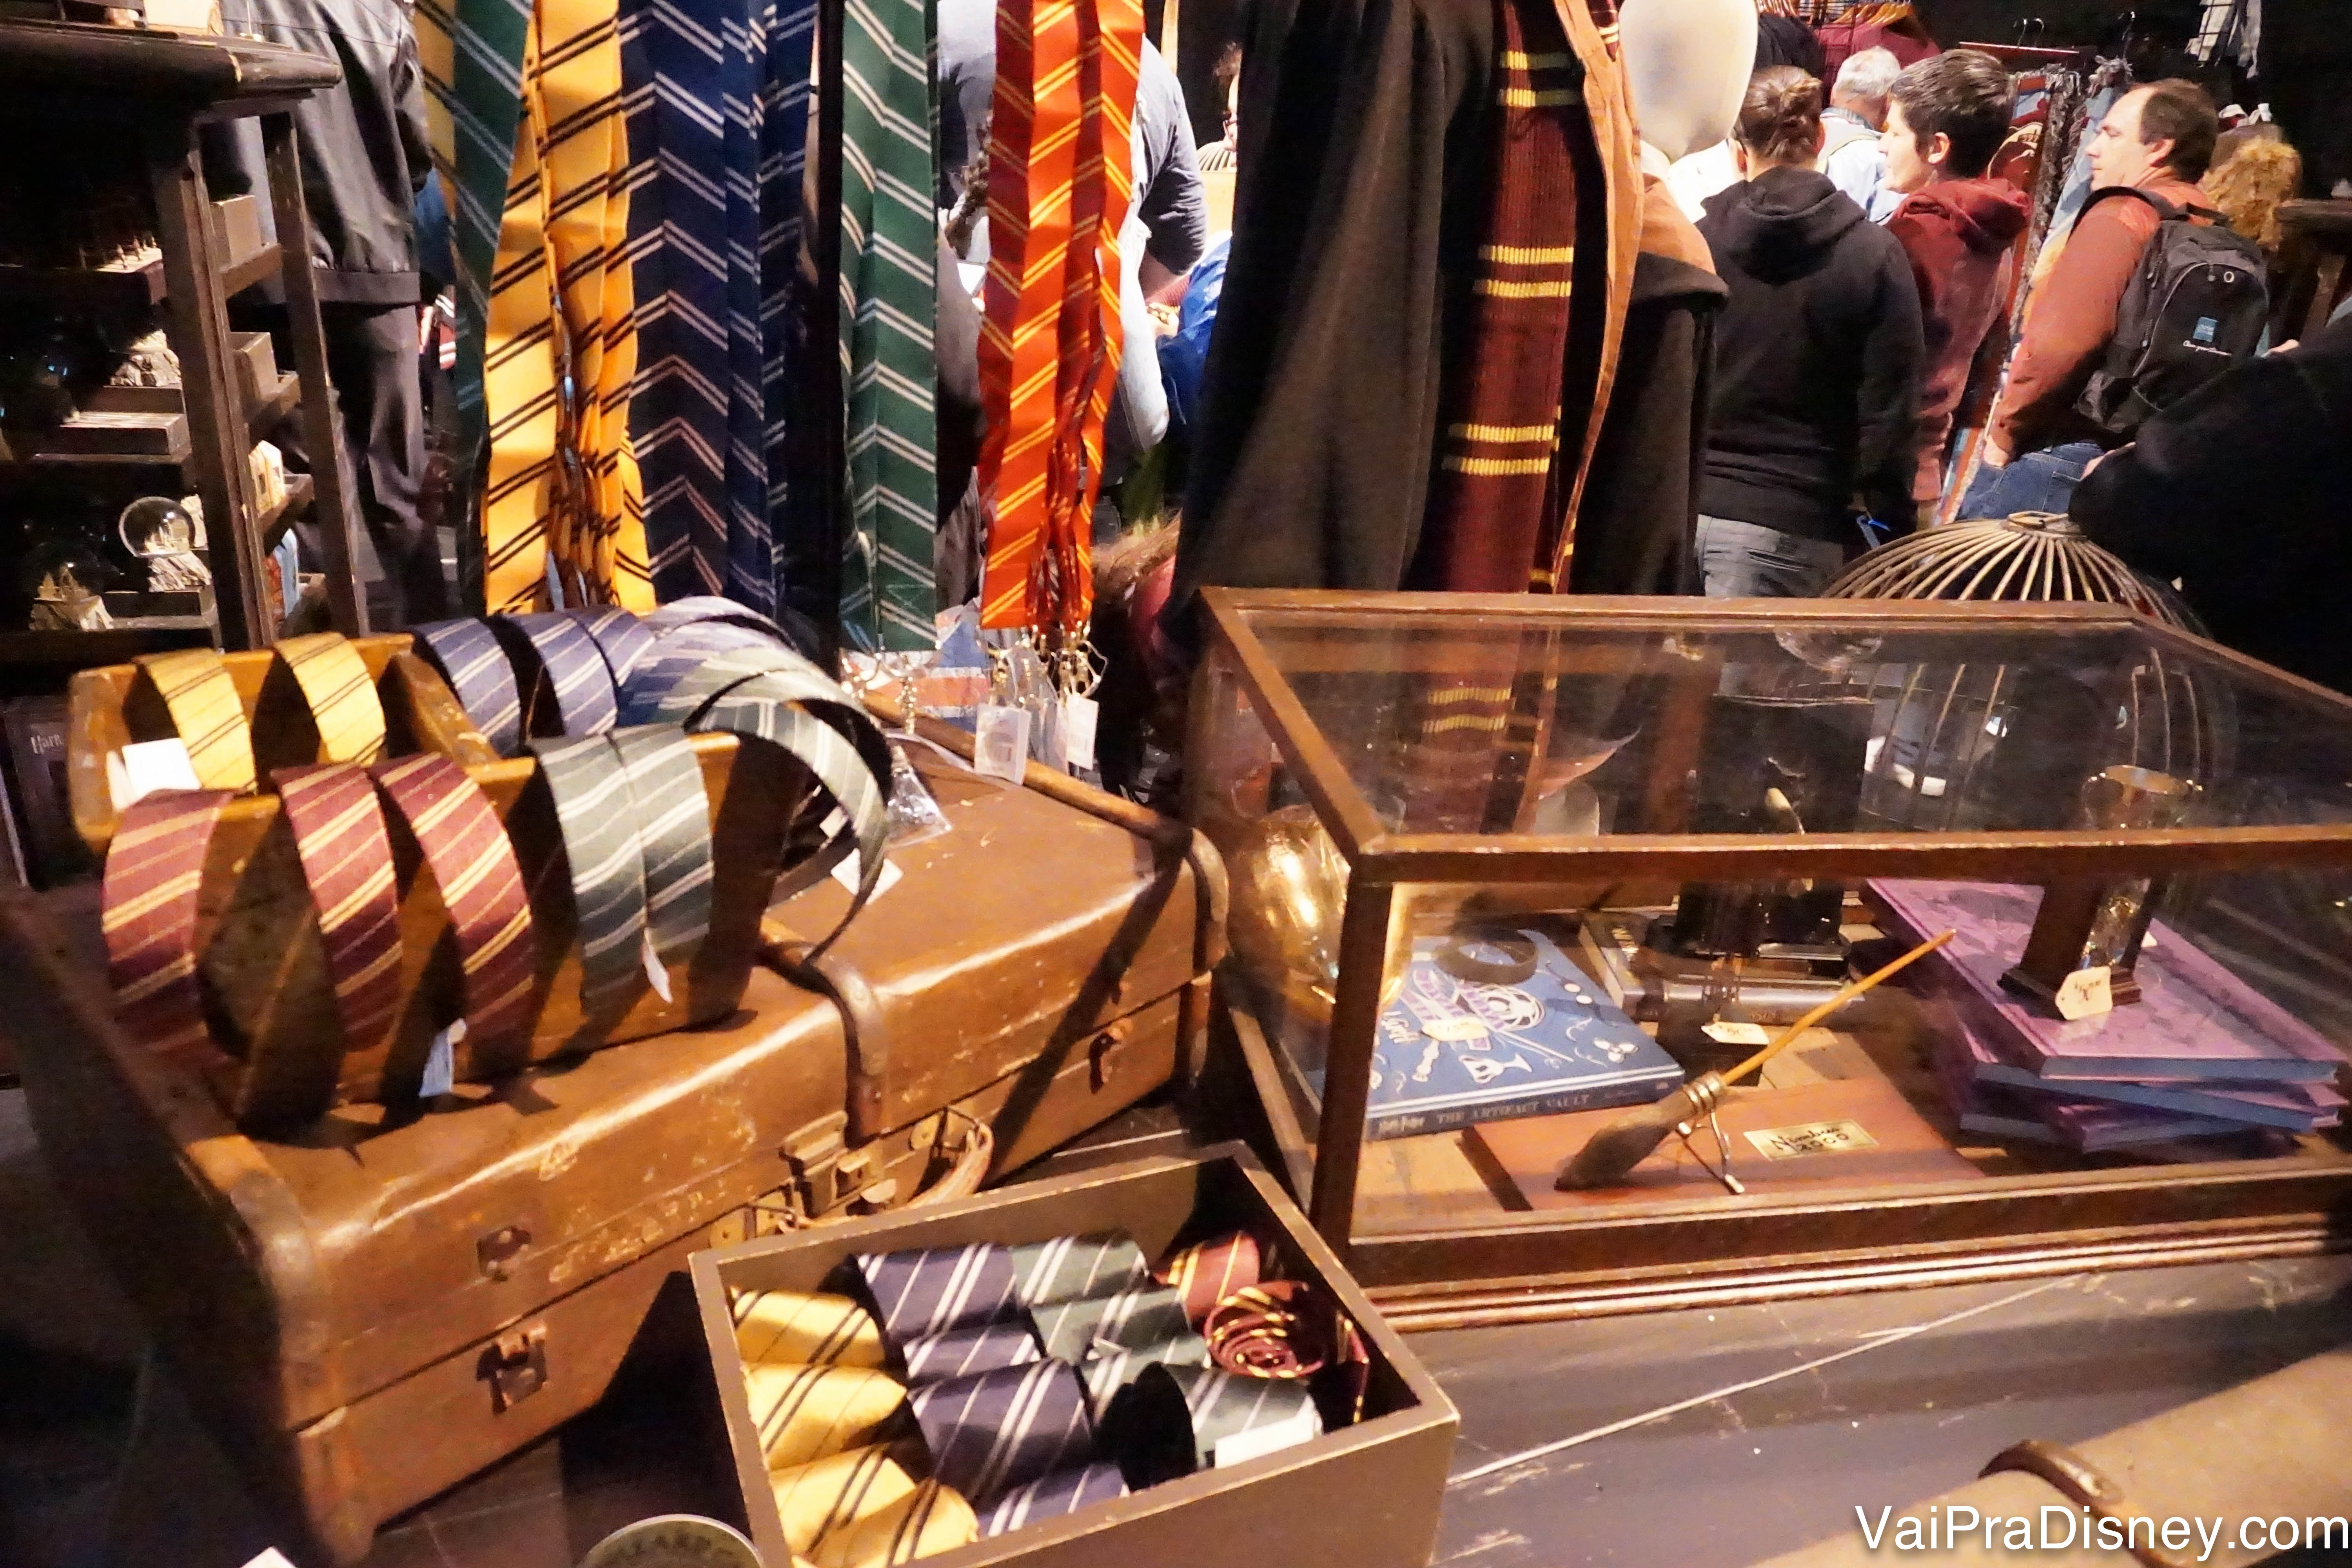 Alguns itens em exibição na exposição, como gravatas das casas, varinhas e roupas 